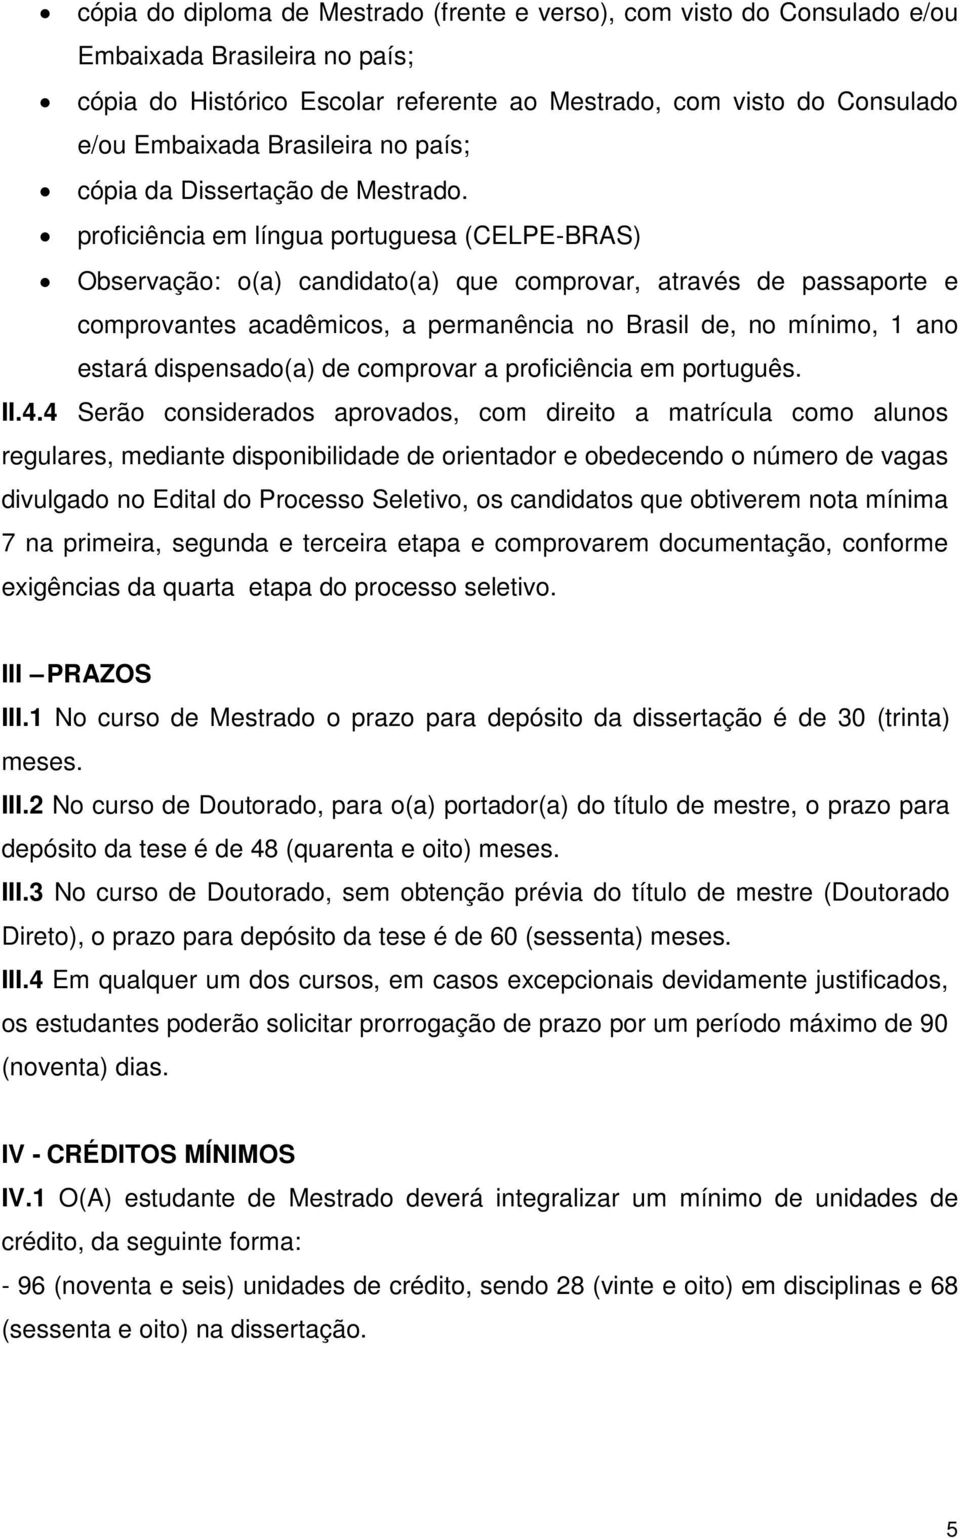 proficiência em língua portuguesa (CELPE-BRAS) Observação: o(a) candidato(a) que comprovar, através de passaporte e comprovantes acadêmicos, a permanência no Brasil de, no mínimo, 1 ano estará